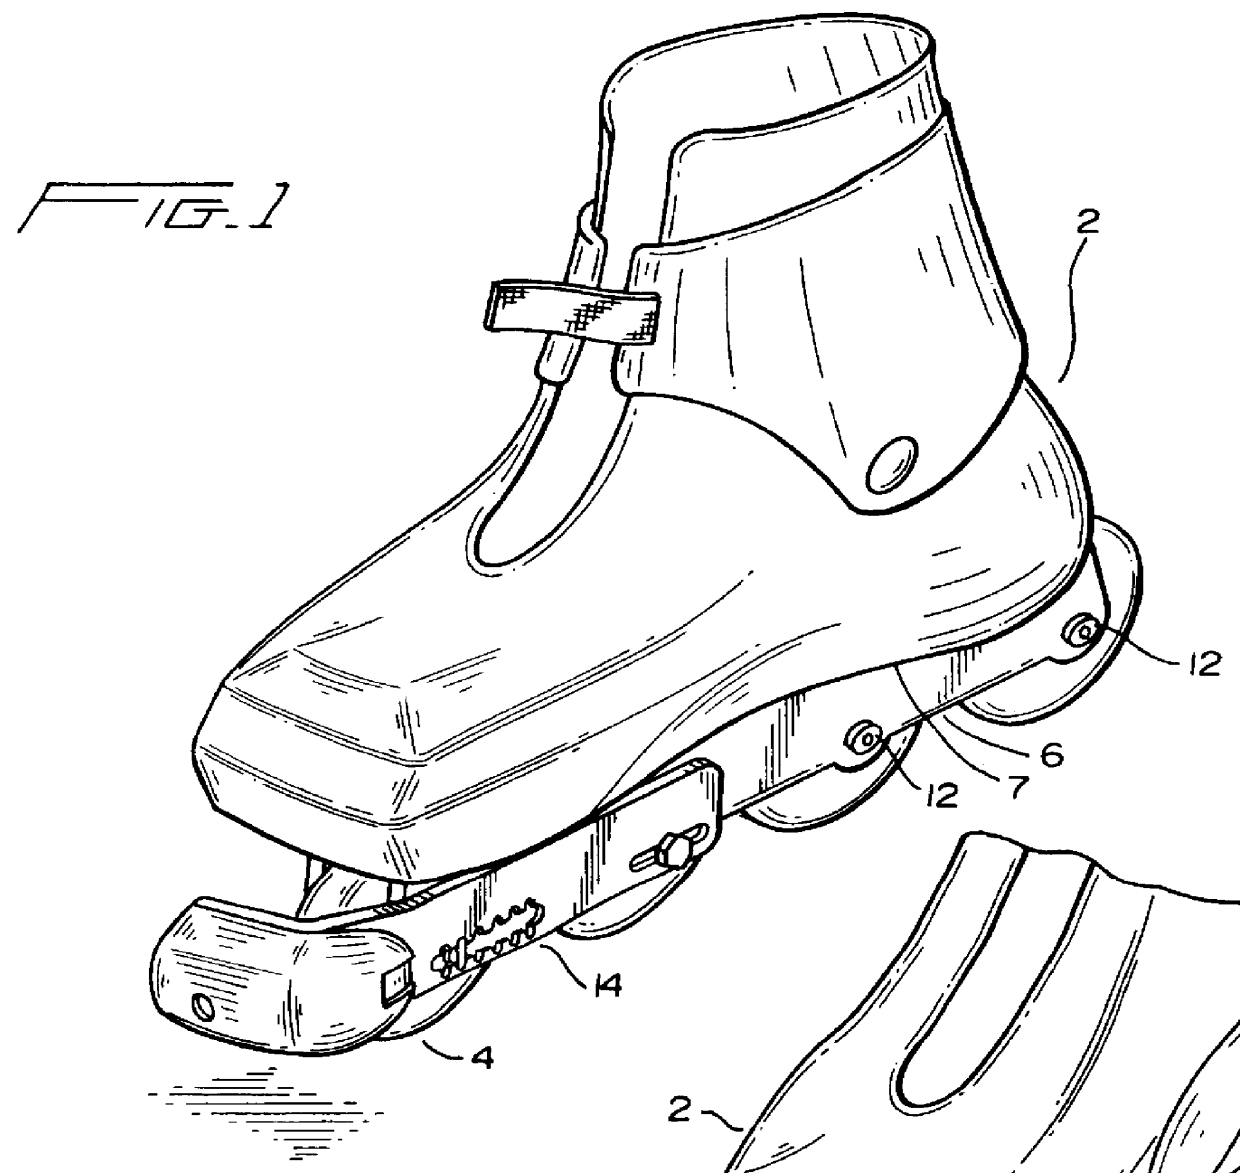 In-line skate brakes